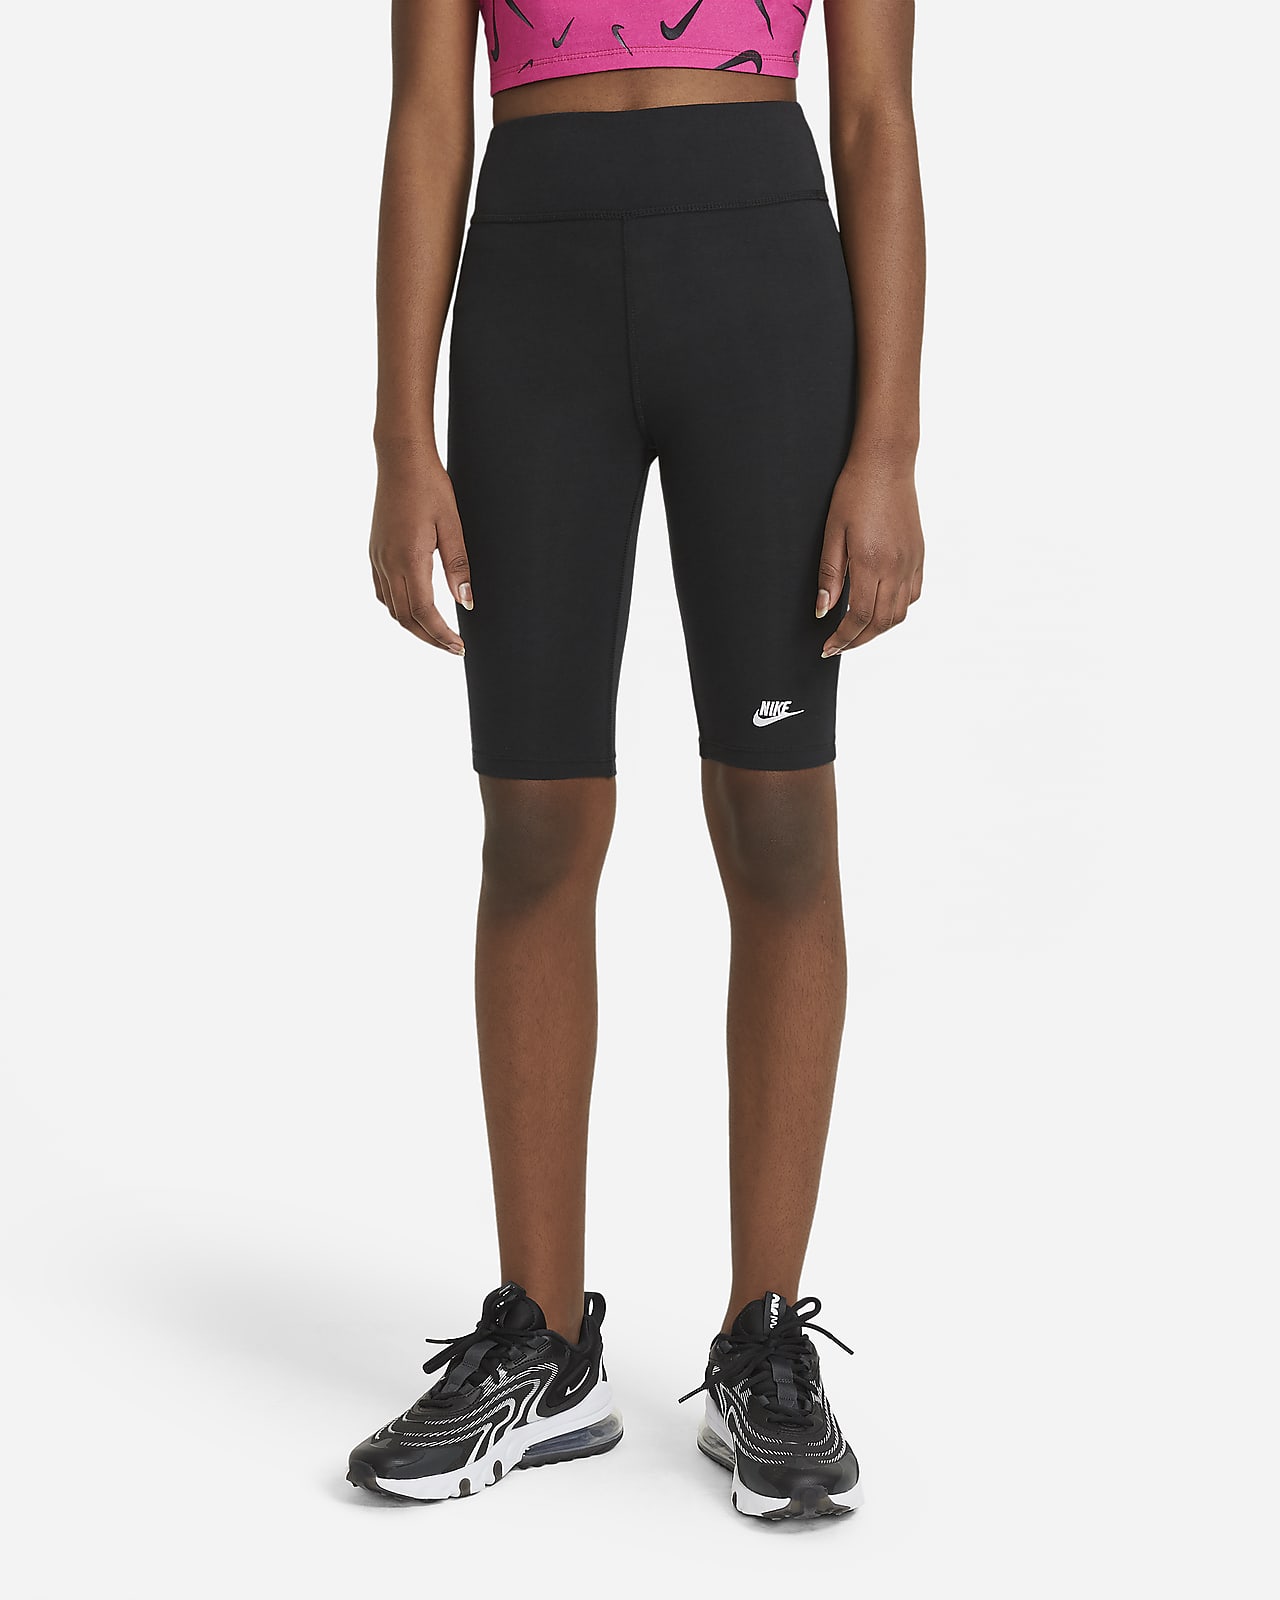 Nike Sportswear Radshorts mit hohem Bund für ältere Kinder (Mädchen) (ca. 23 cm)